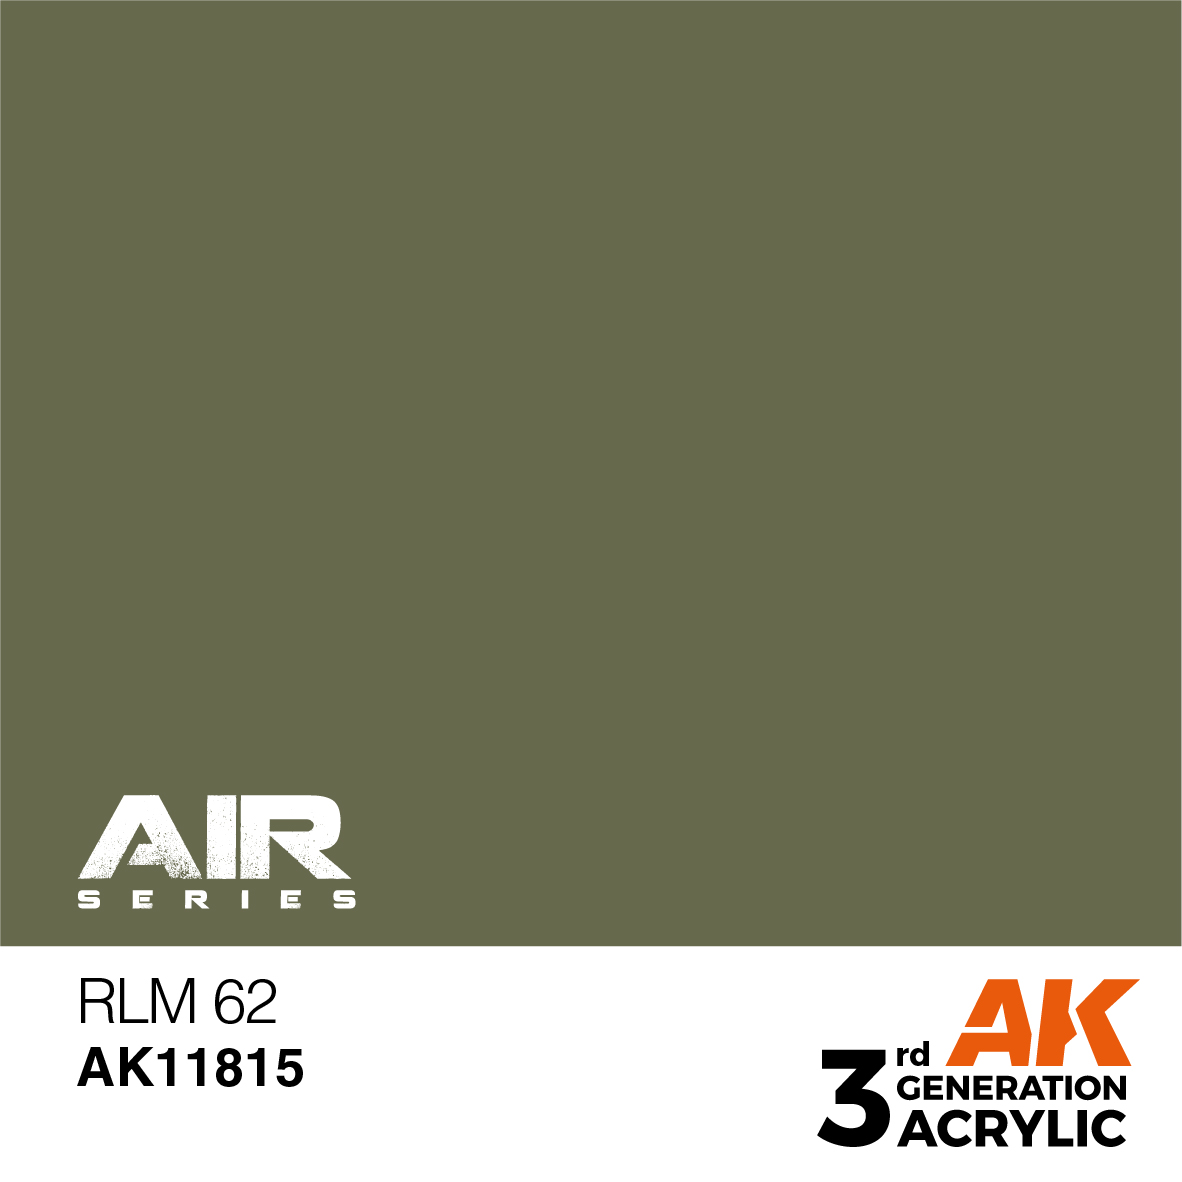 RLM 62 – AIR